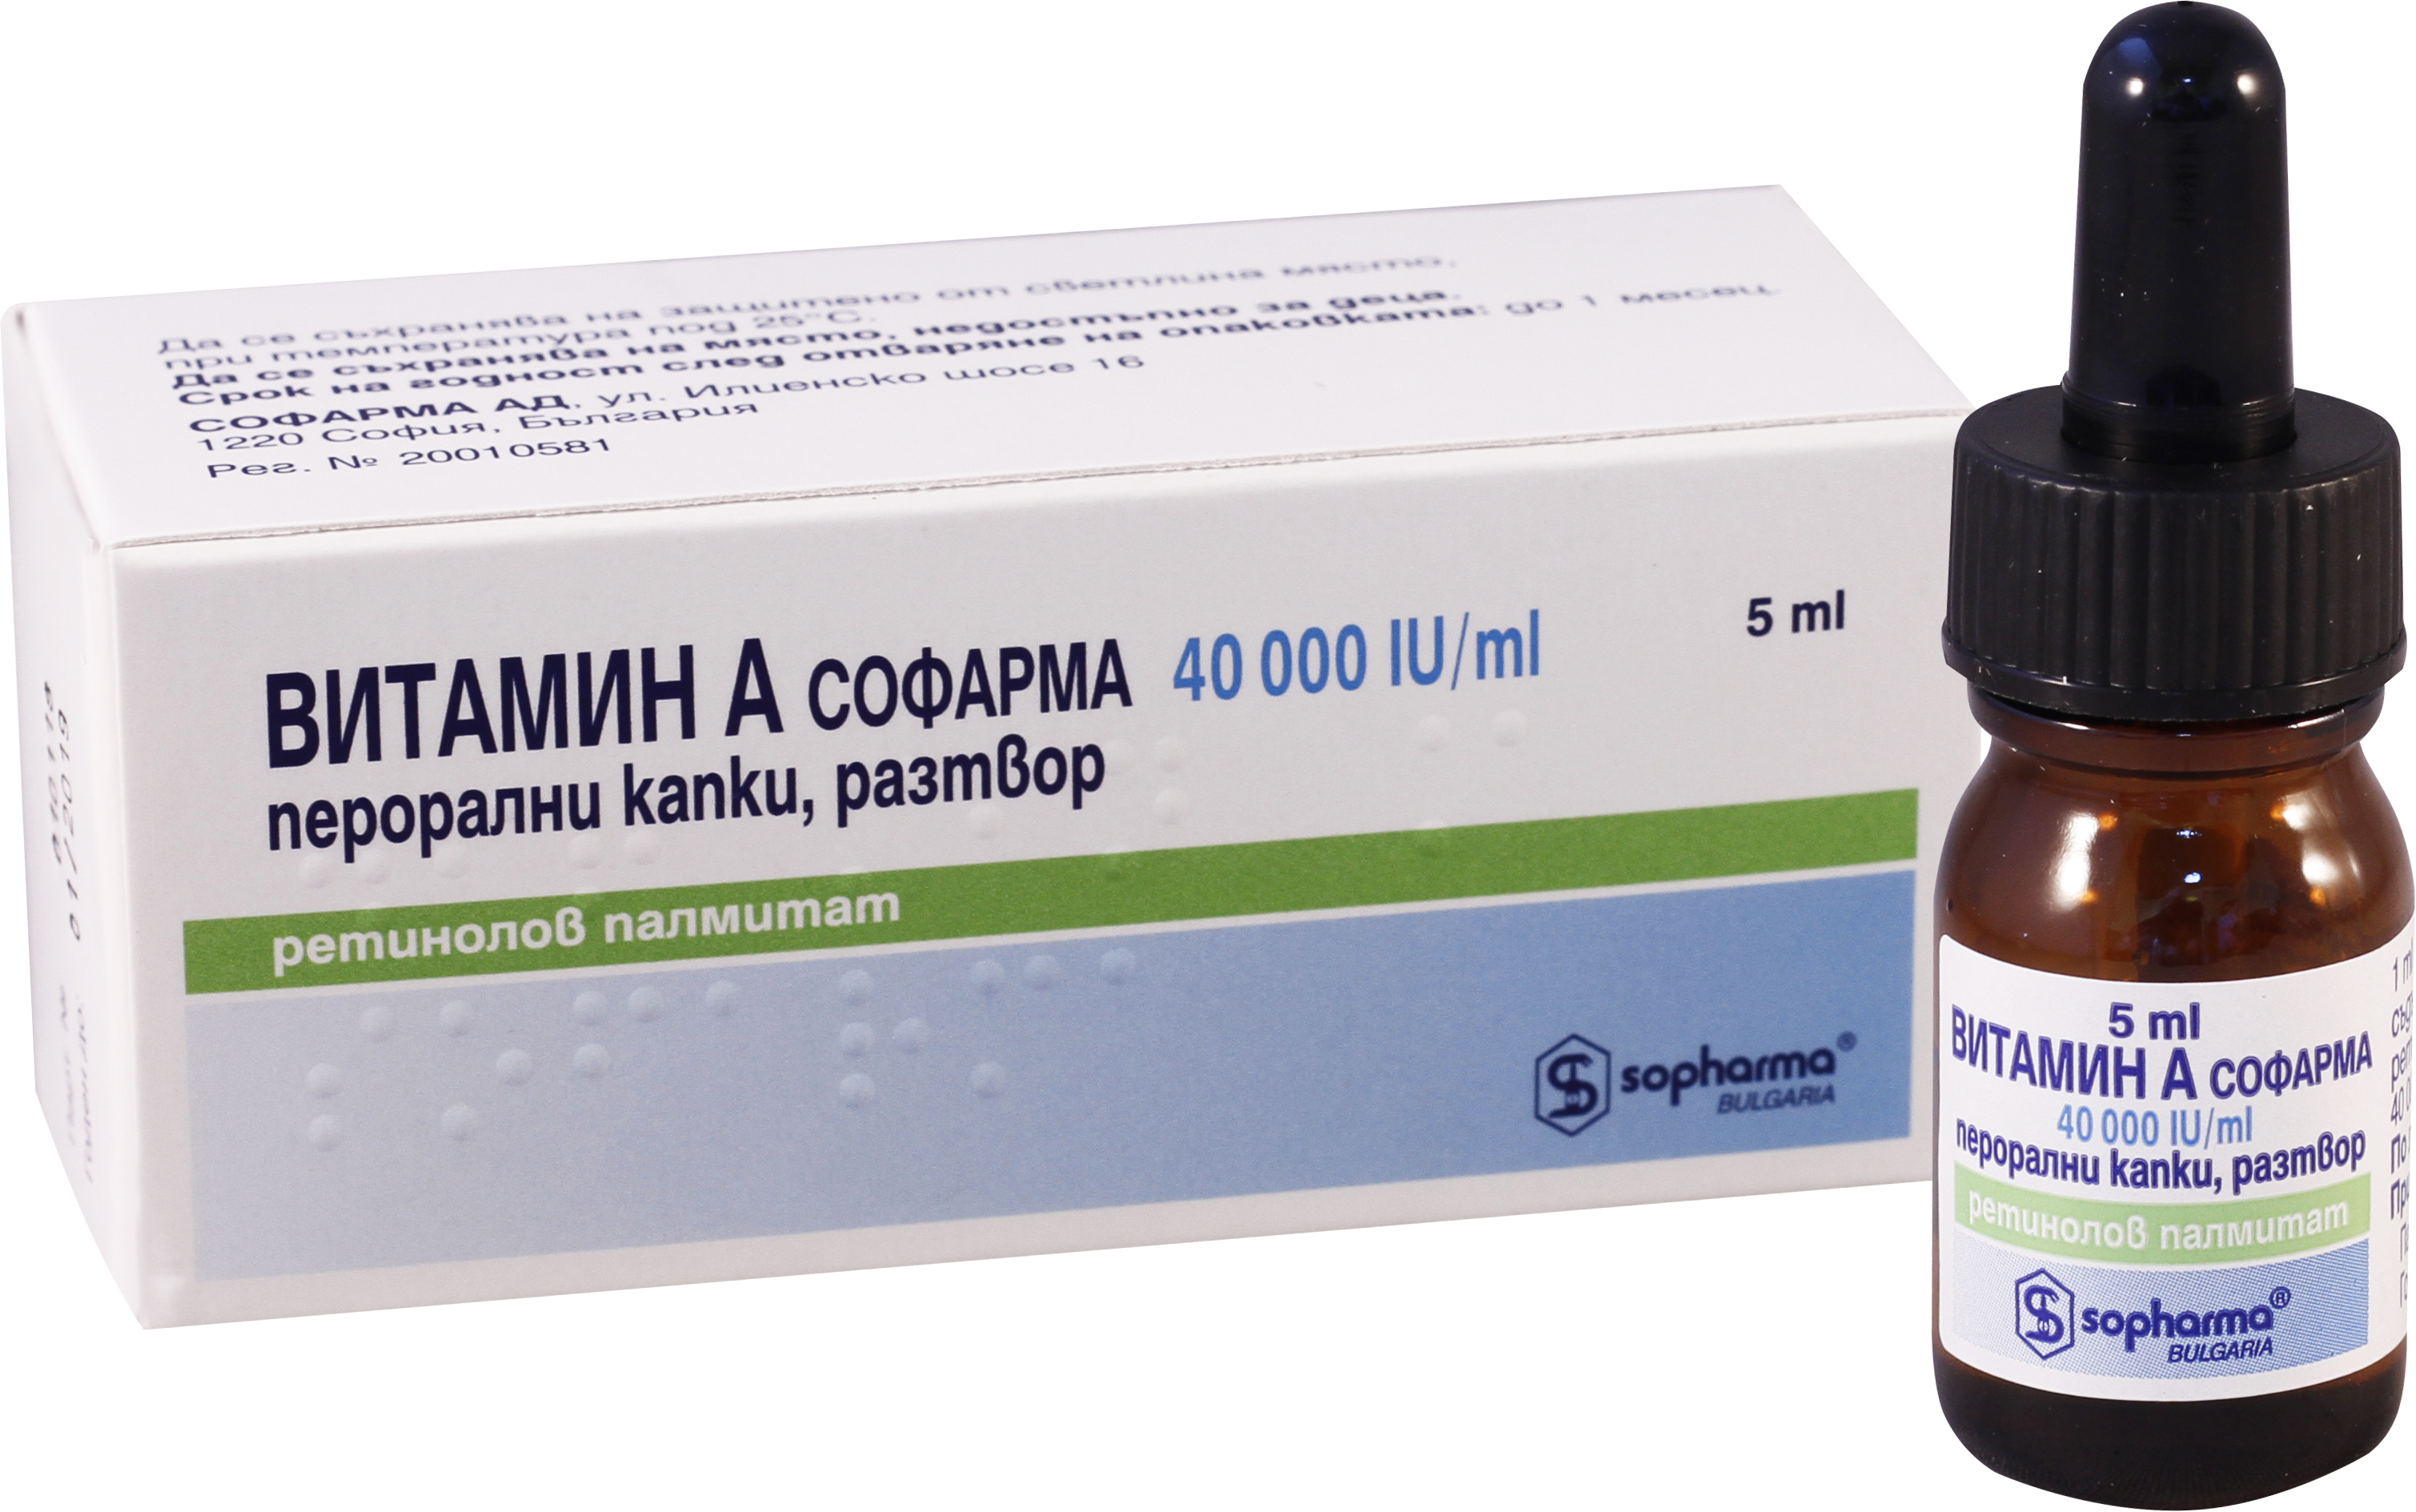 ვიტამინი A სოფარმა  / Vitamin A sopharma